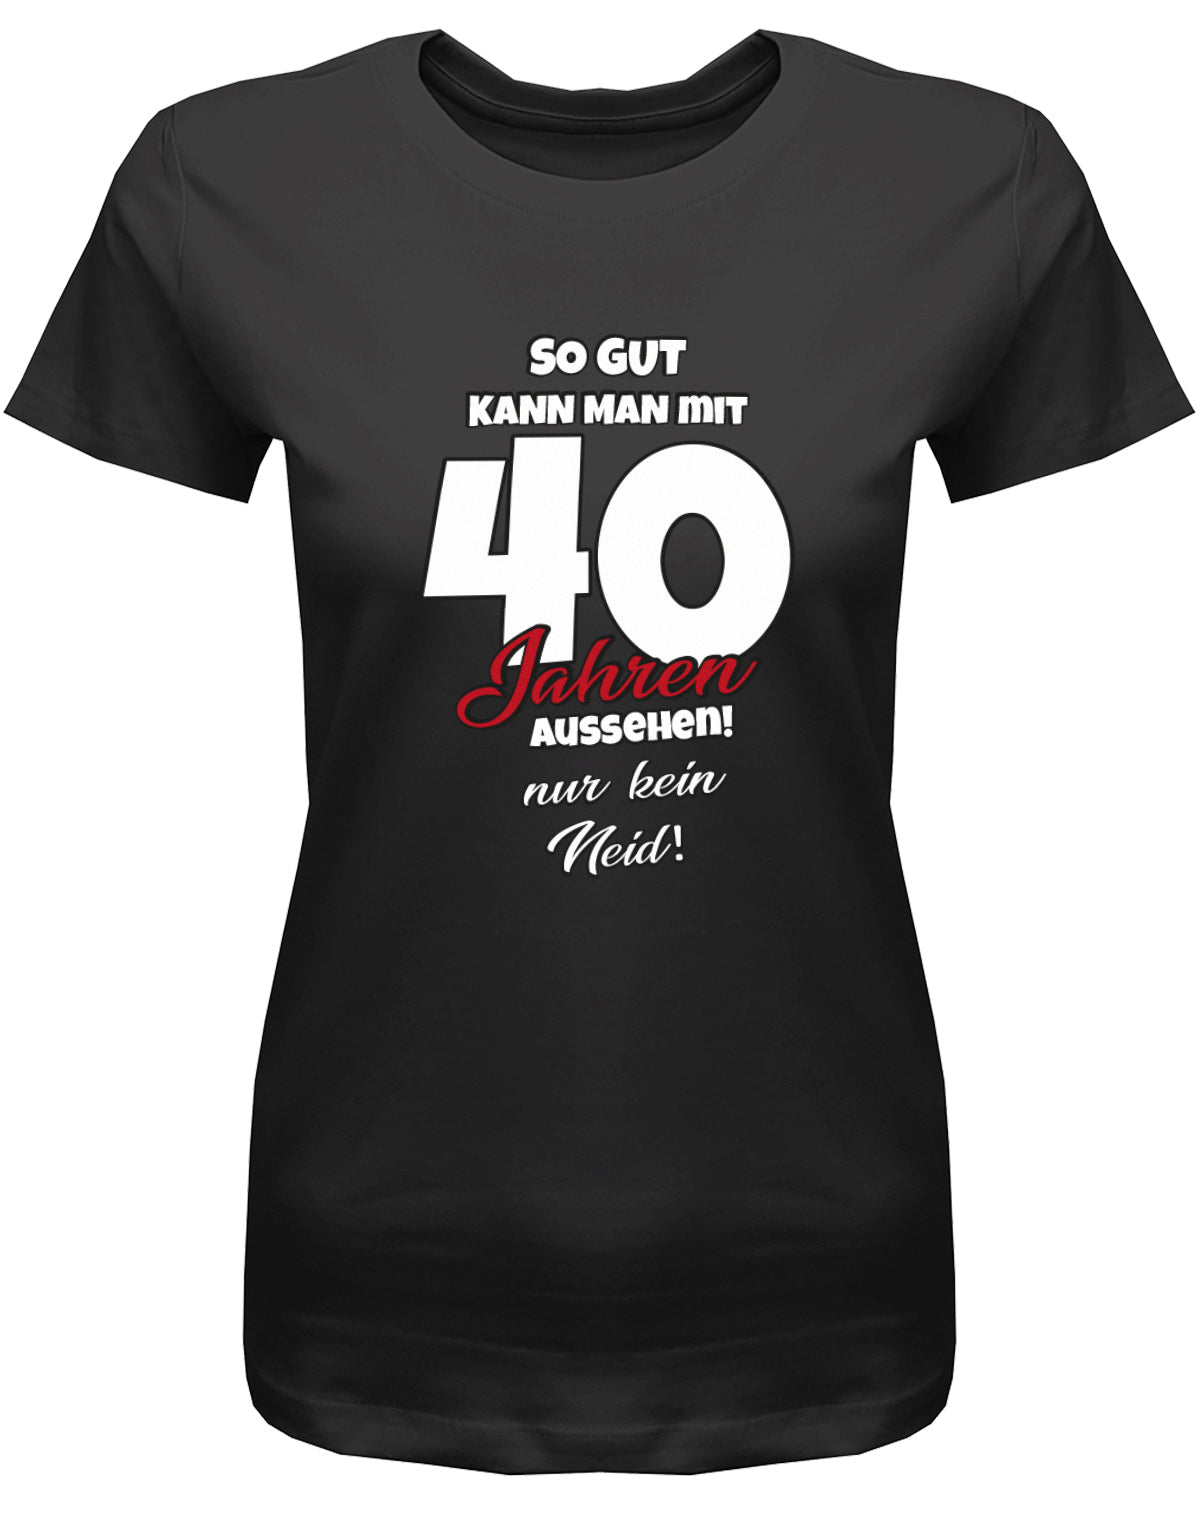 Lustiges T-Shirt zum 40 Geburtstag für die Frau Bedruckt mit So gut kann man mit 40 Jahren aussehen! Nur kein Neid! Schwarz